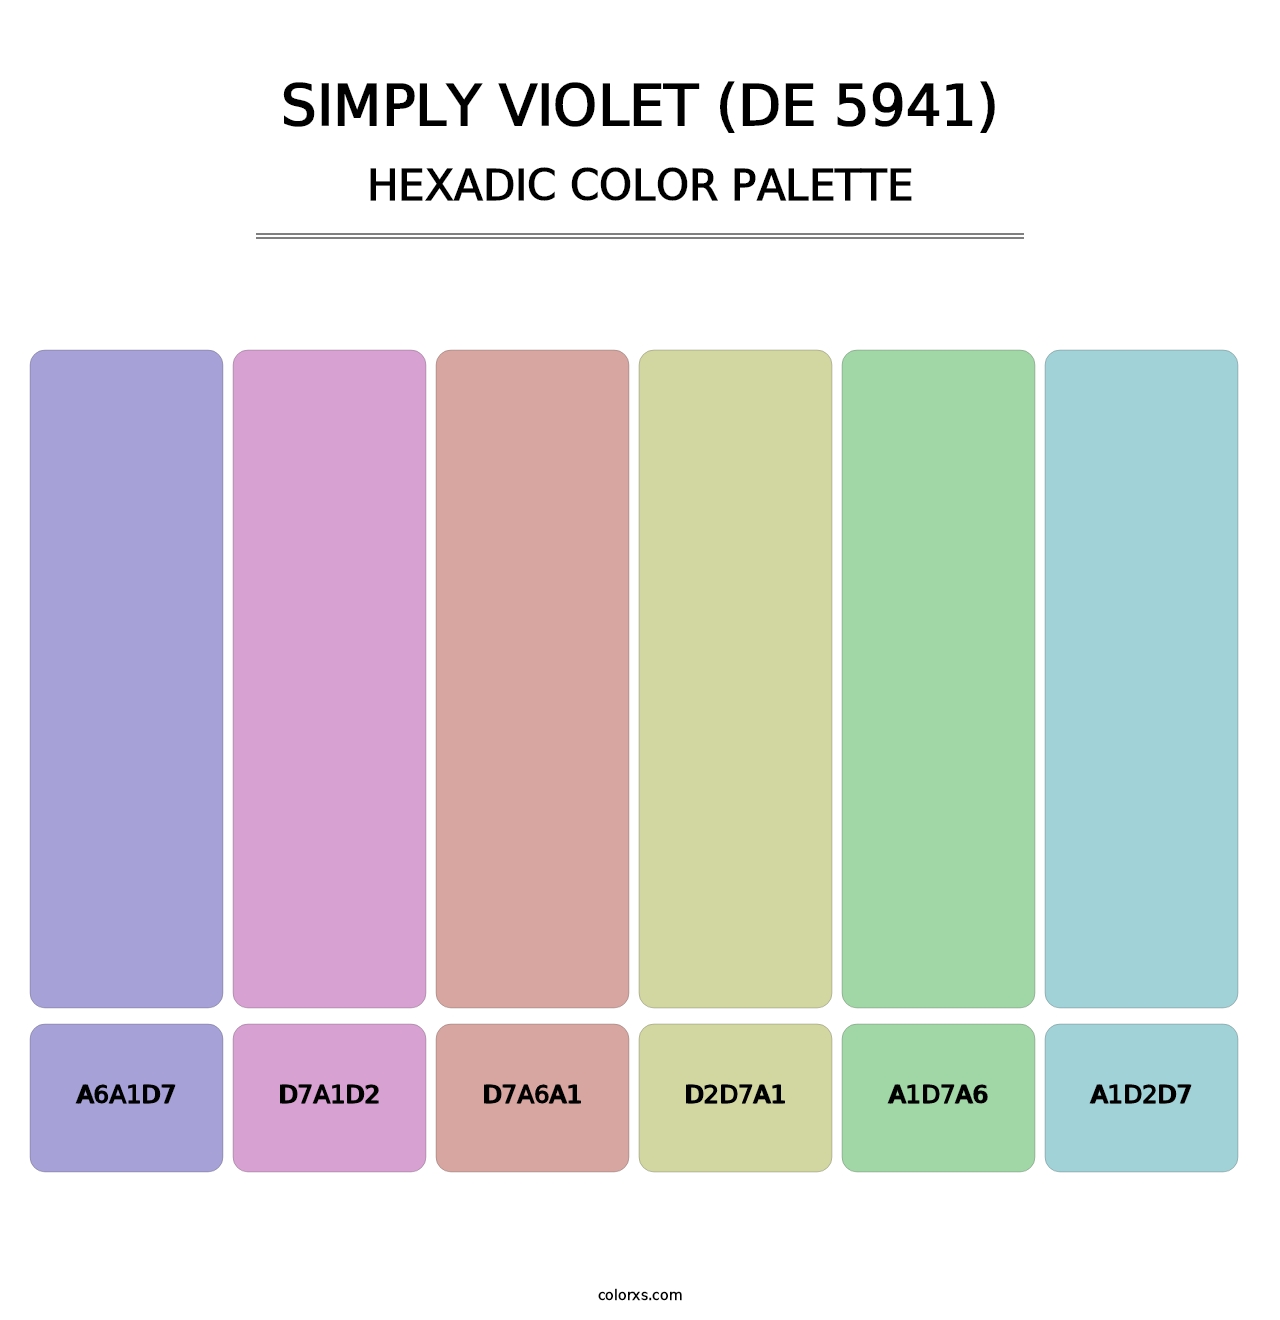 Simply Violet (DE 5941) - Hexadic Color Palette